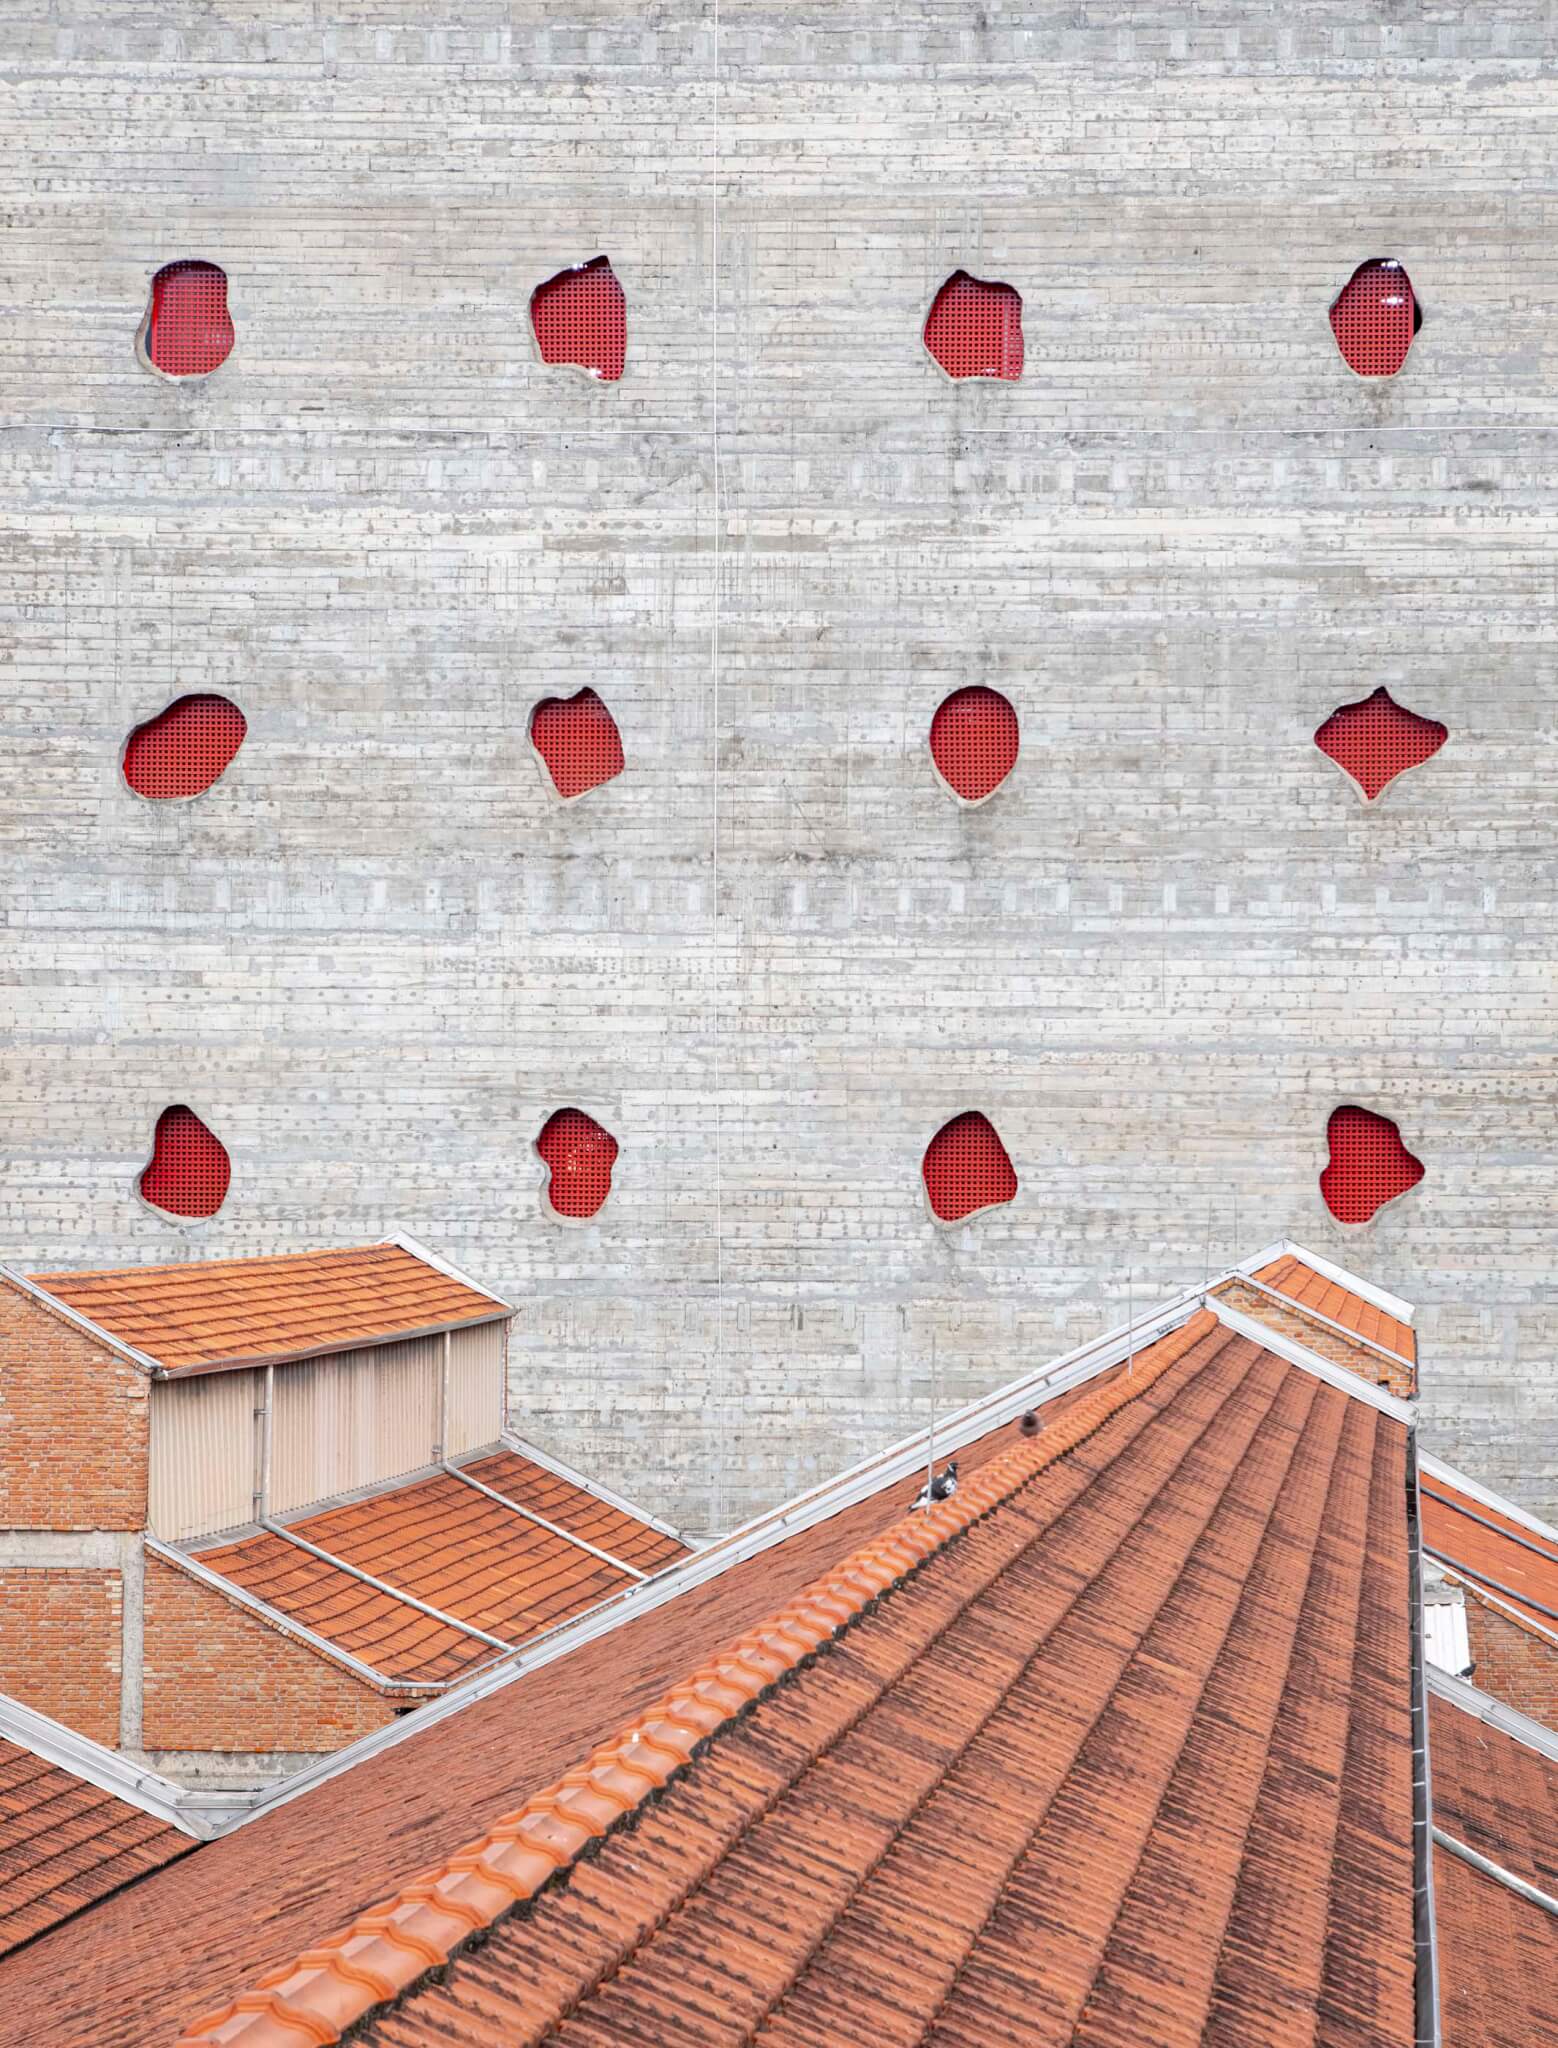 نمای دیوار بتنی سوراخ شده با سوراخ های قرمز